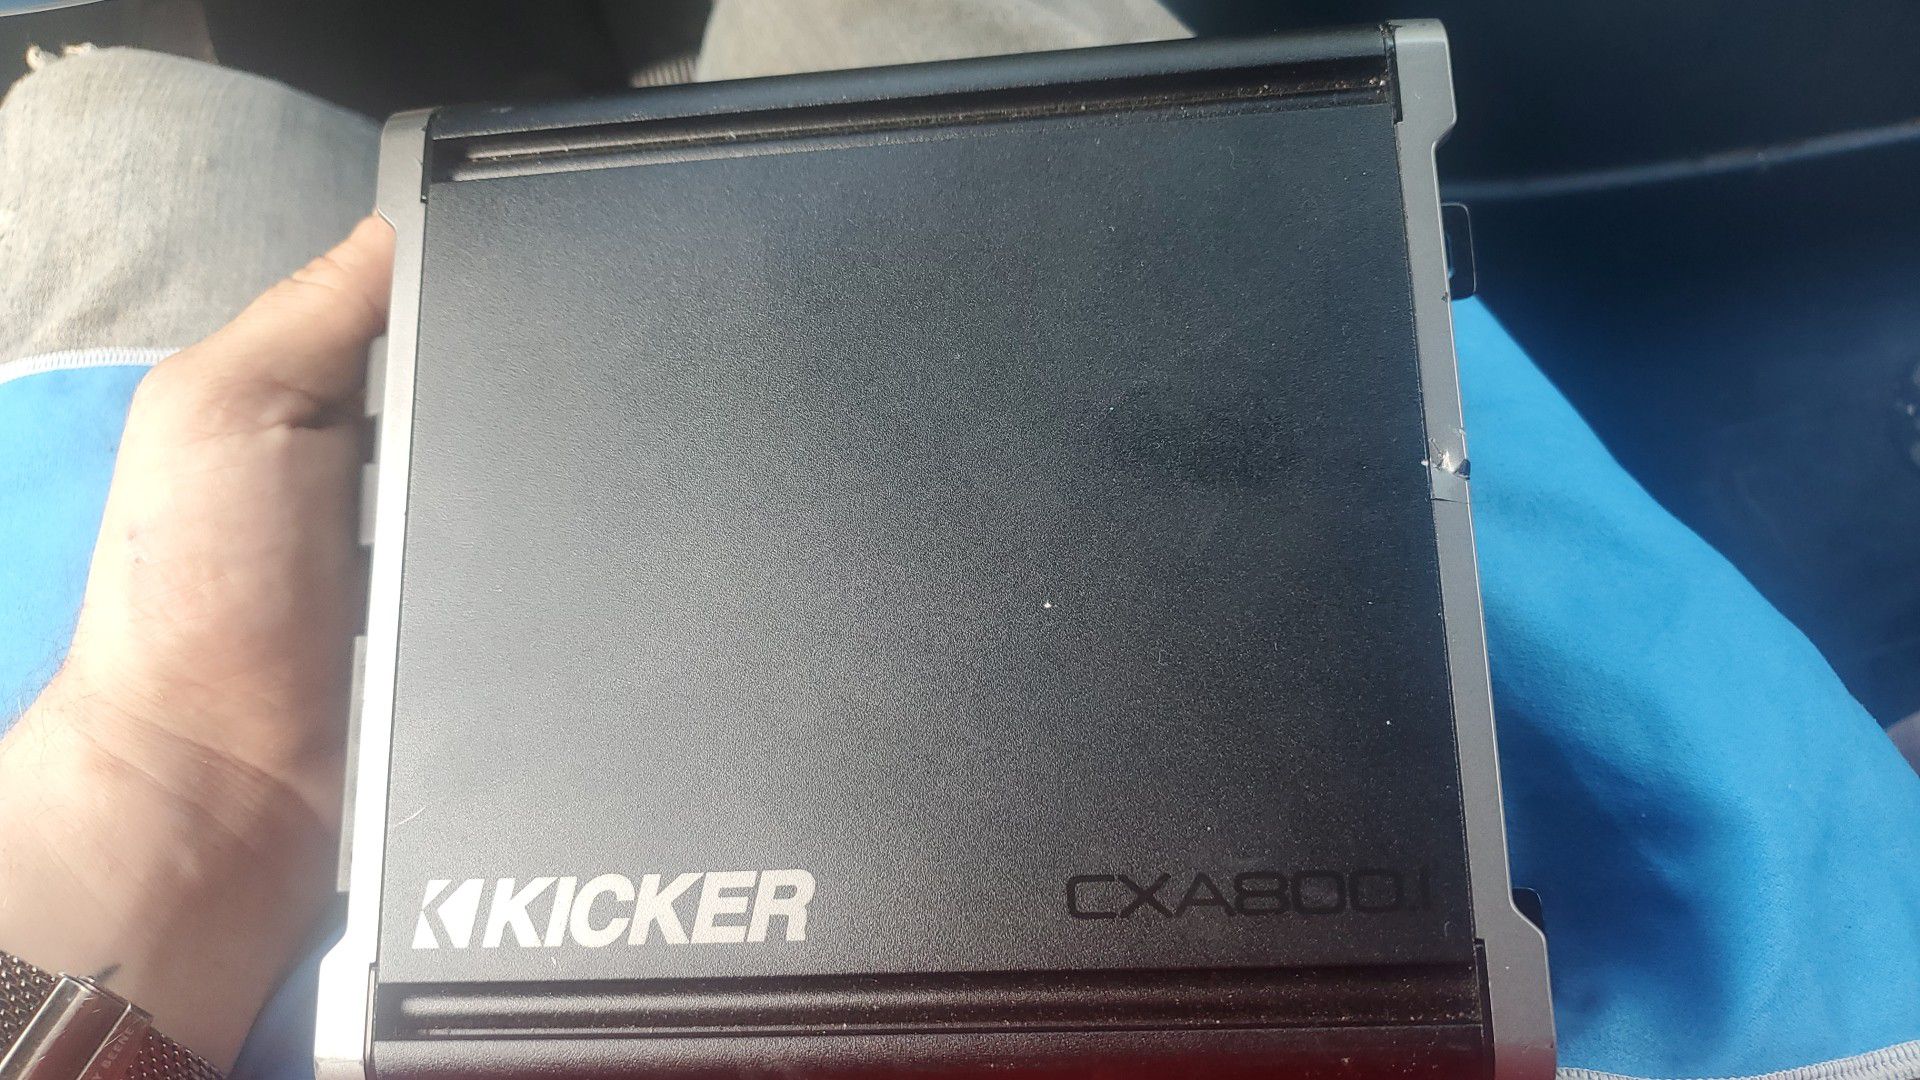 kicker cxa800.1 800 watt car stereo amplifier